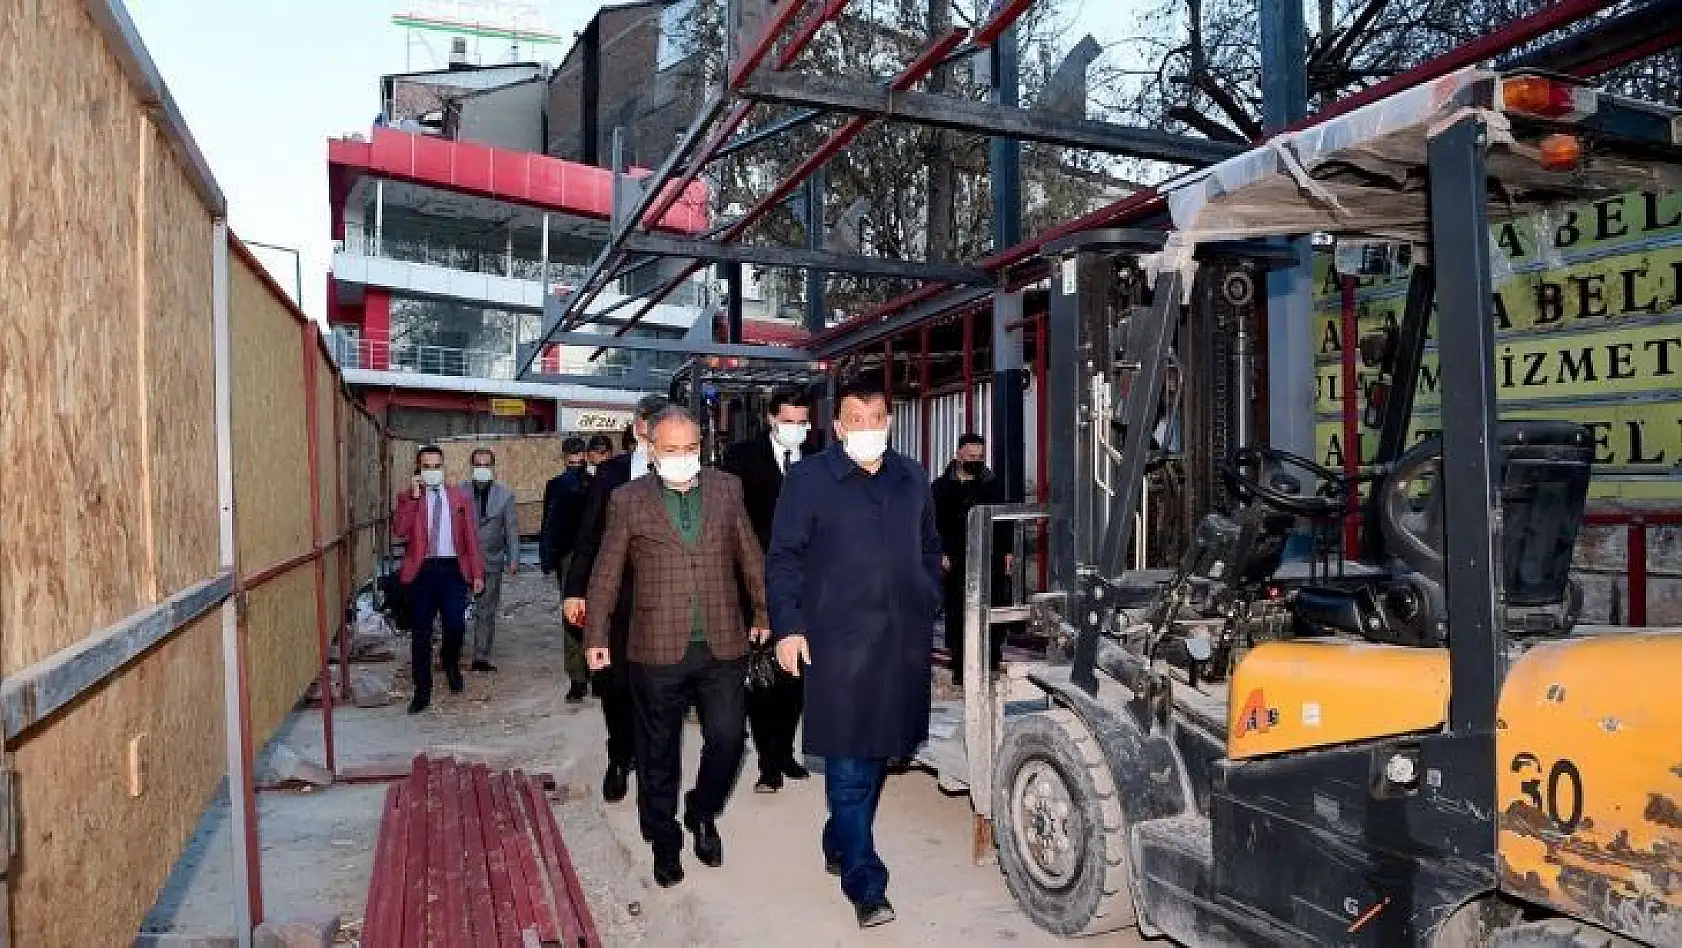 Malatya Büyükşehir, Çilesiz otobüs durağını yeniliyor